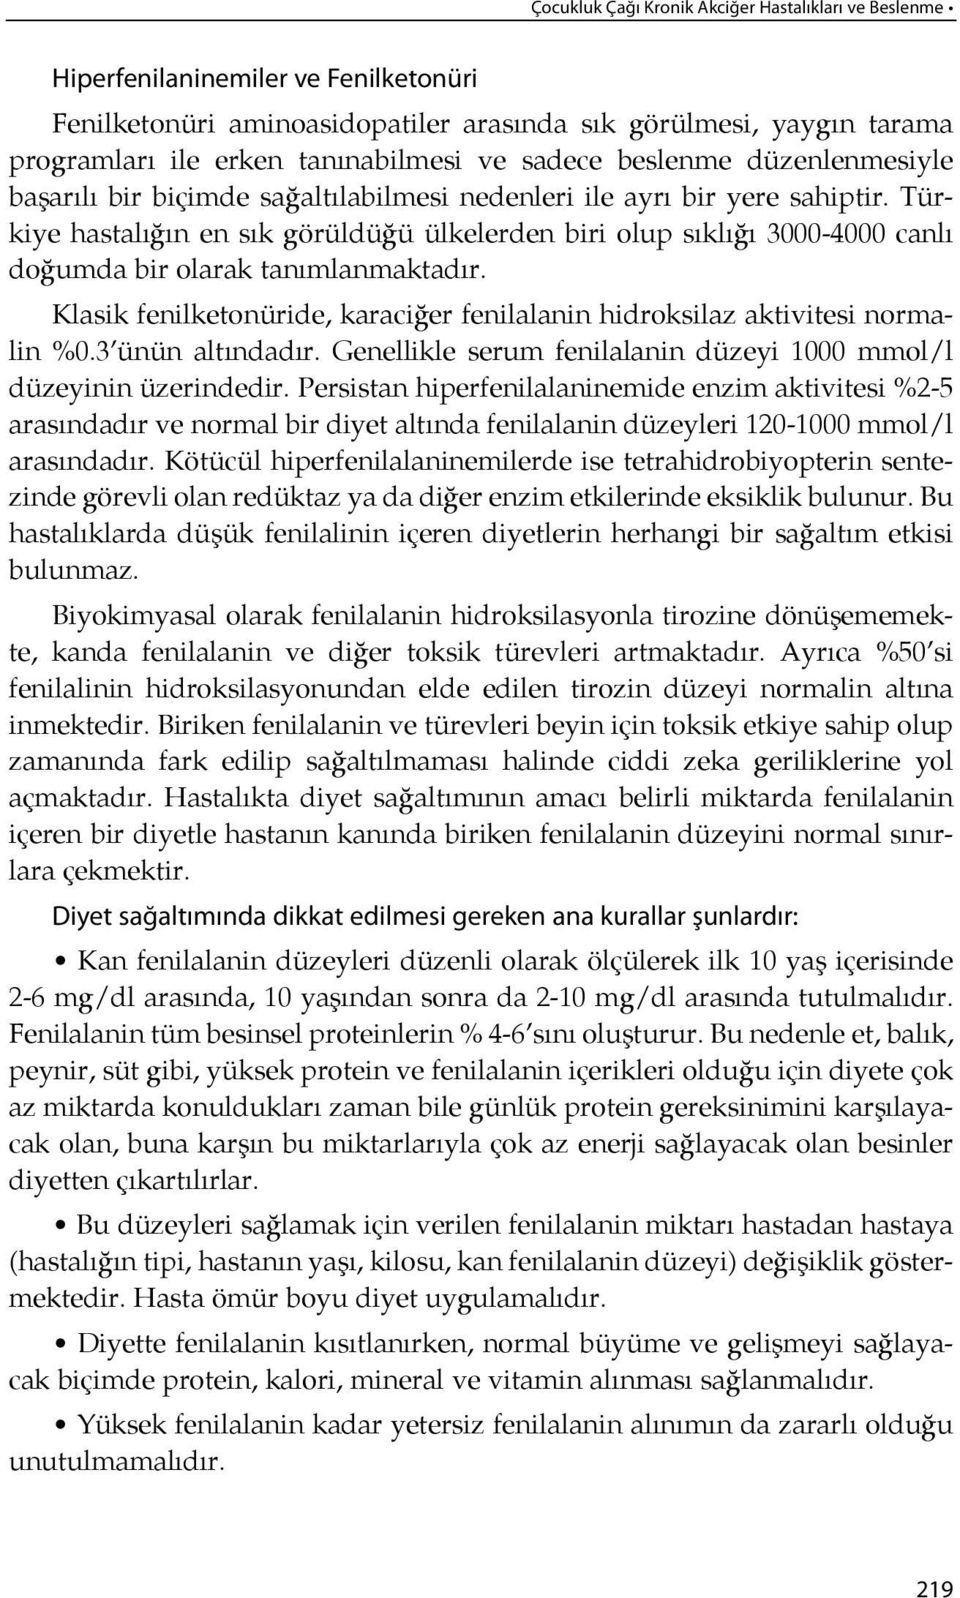 Türkiye hastalı ğın en sık gö rüldüğü ülkelerden biri olup sık lı ğı 3000-4000 can lı do ğum da bir ola rak ta nımlanmaktadır.